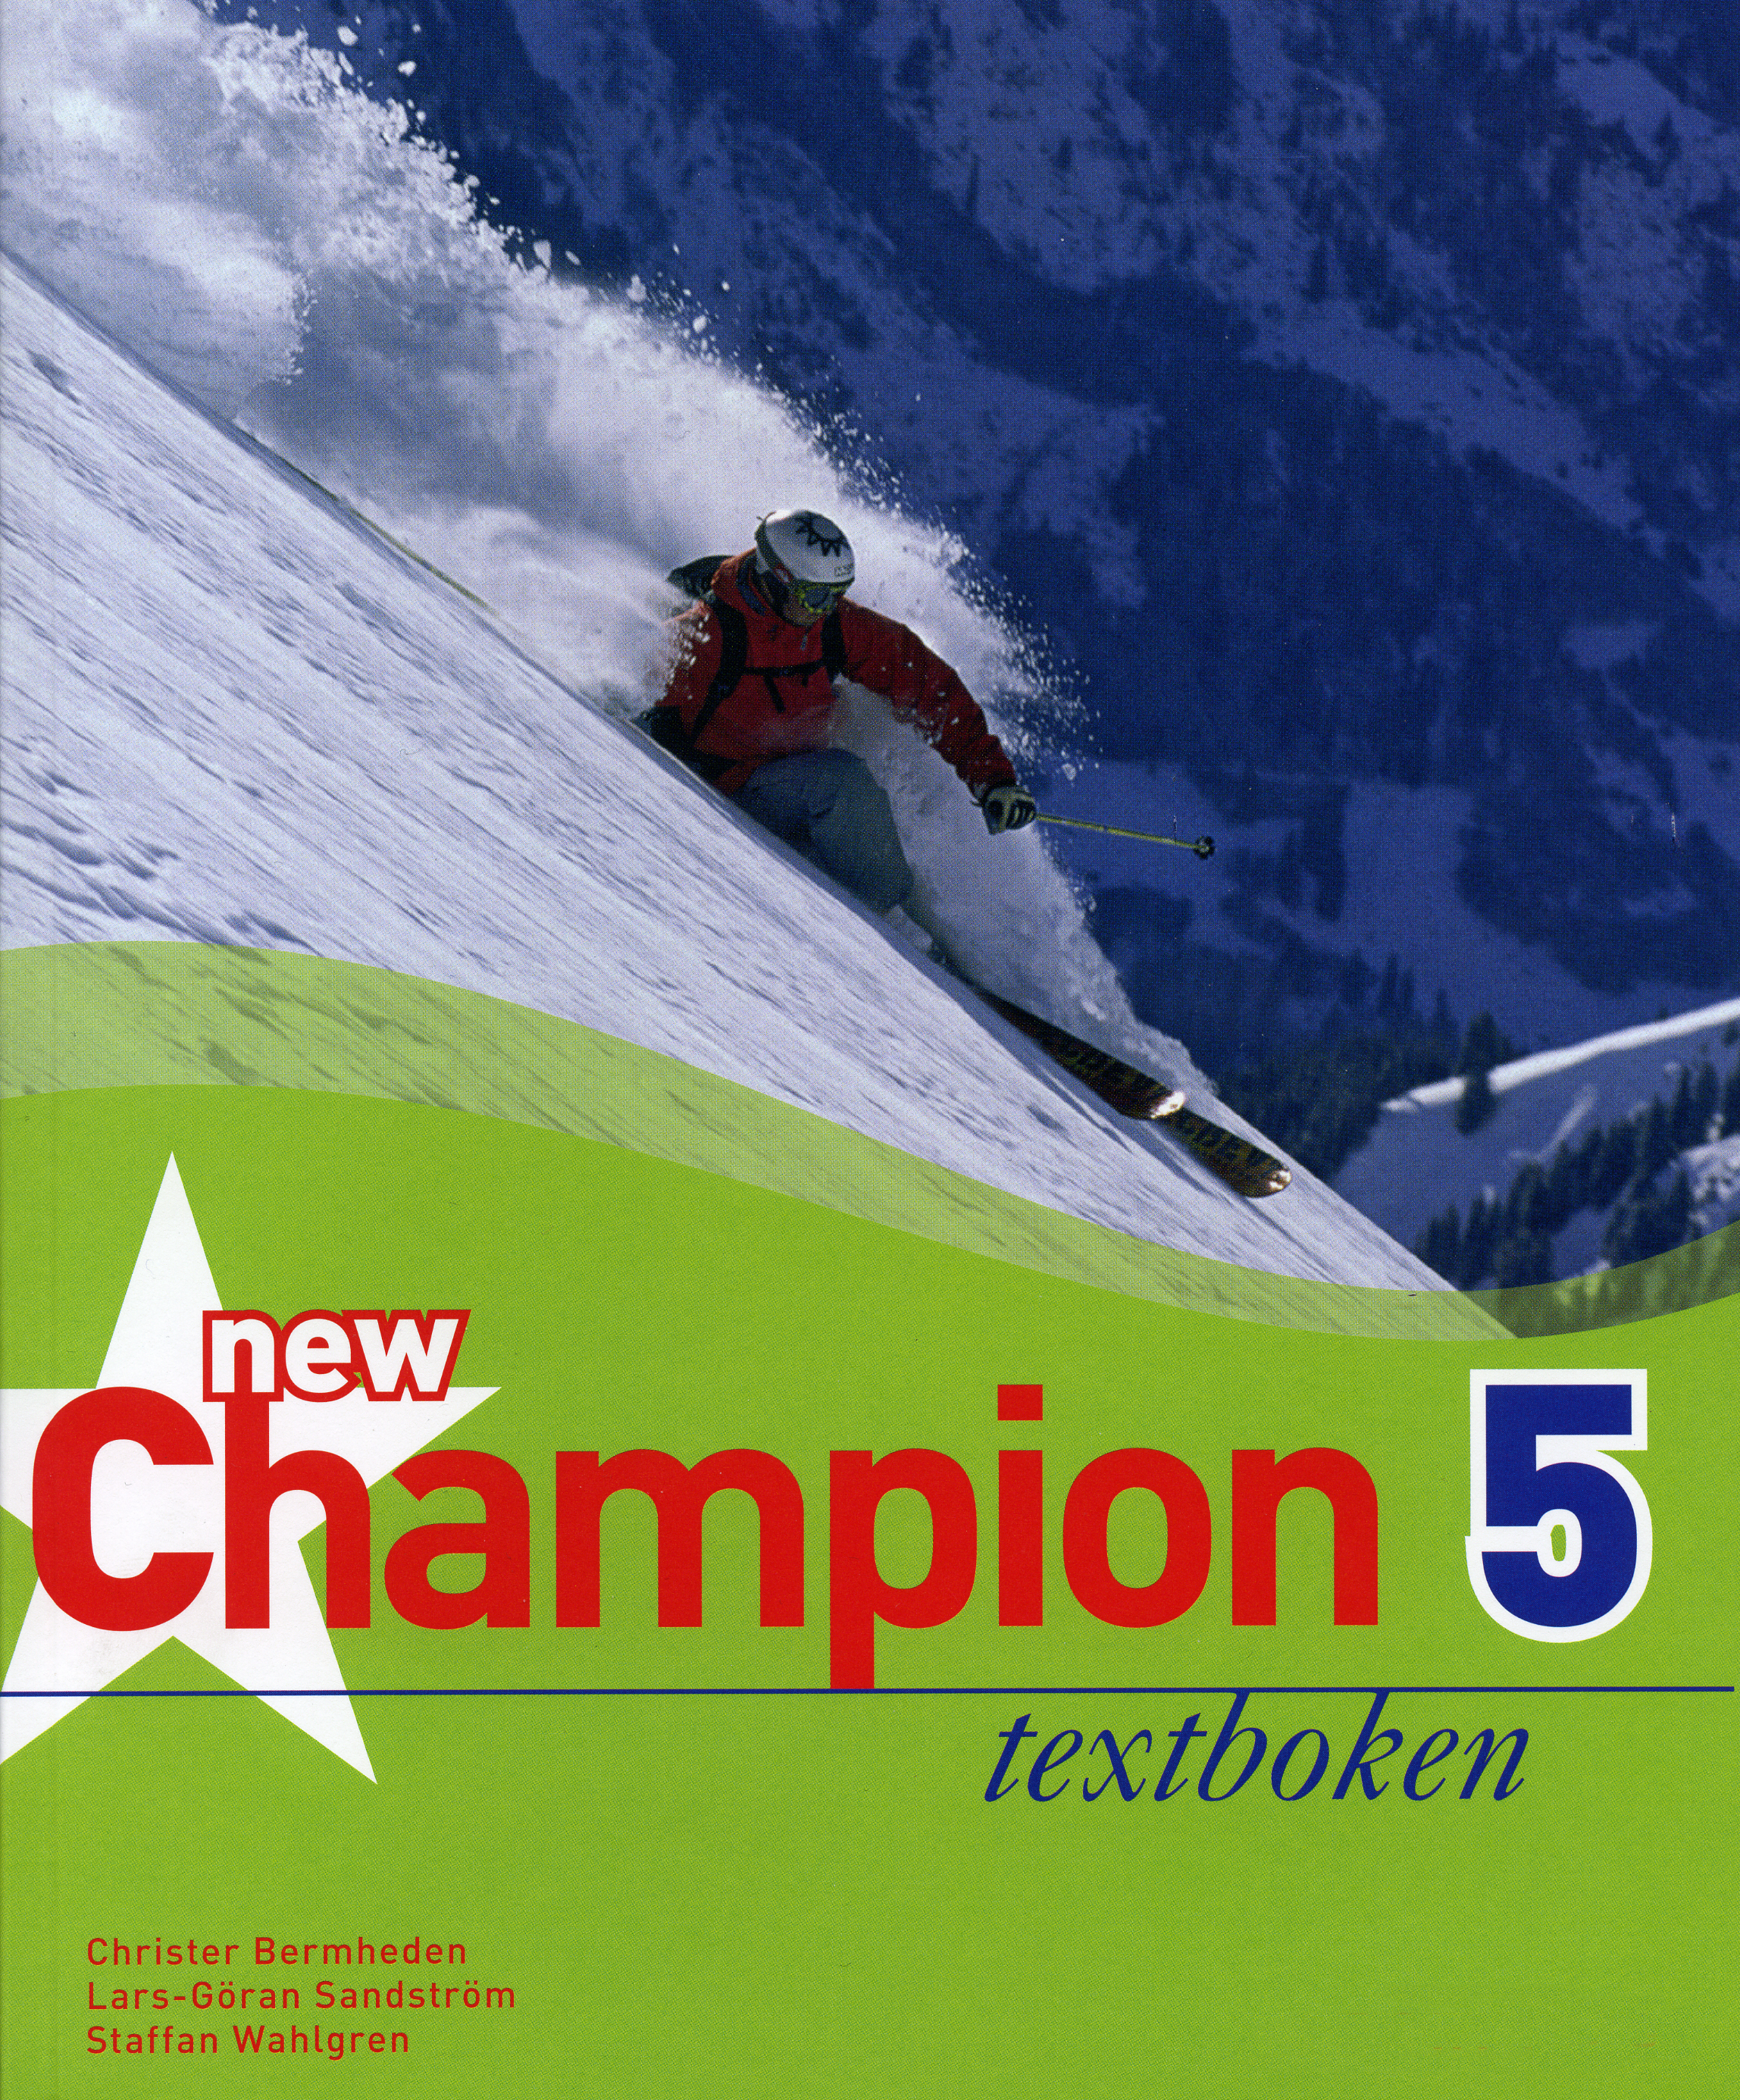 New Champion 5 Textboken, E-bok i HTML-format, obearbetad text och bild -  SPSM Webbutiken